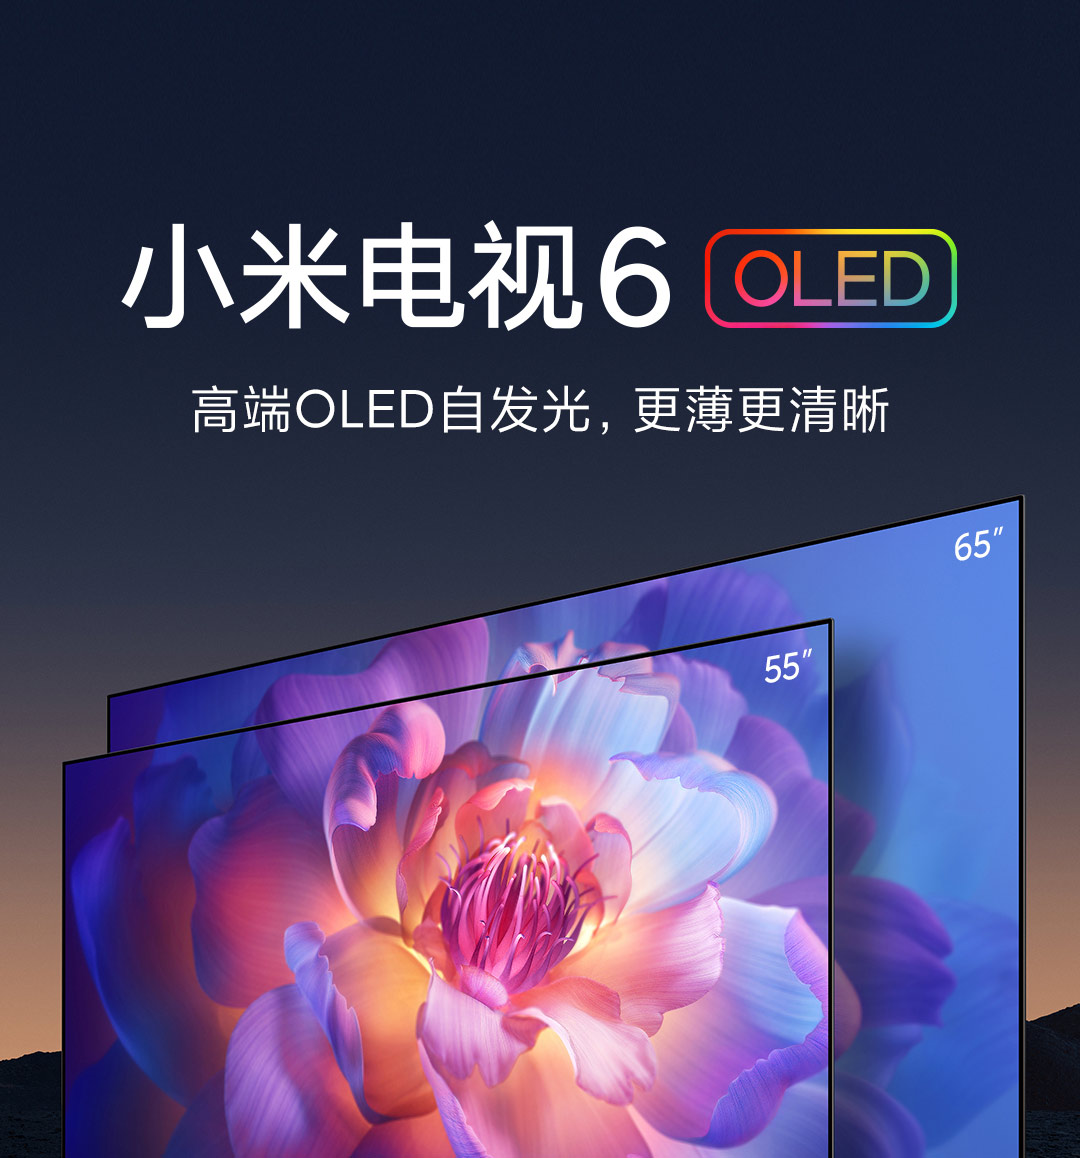 TV Xiaomi 65\ Android TV065XIA07 4K Ultra Hd Smart TV